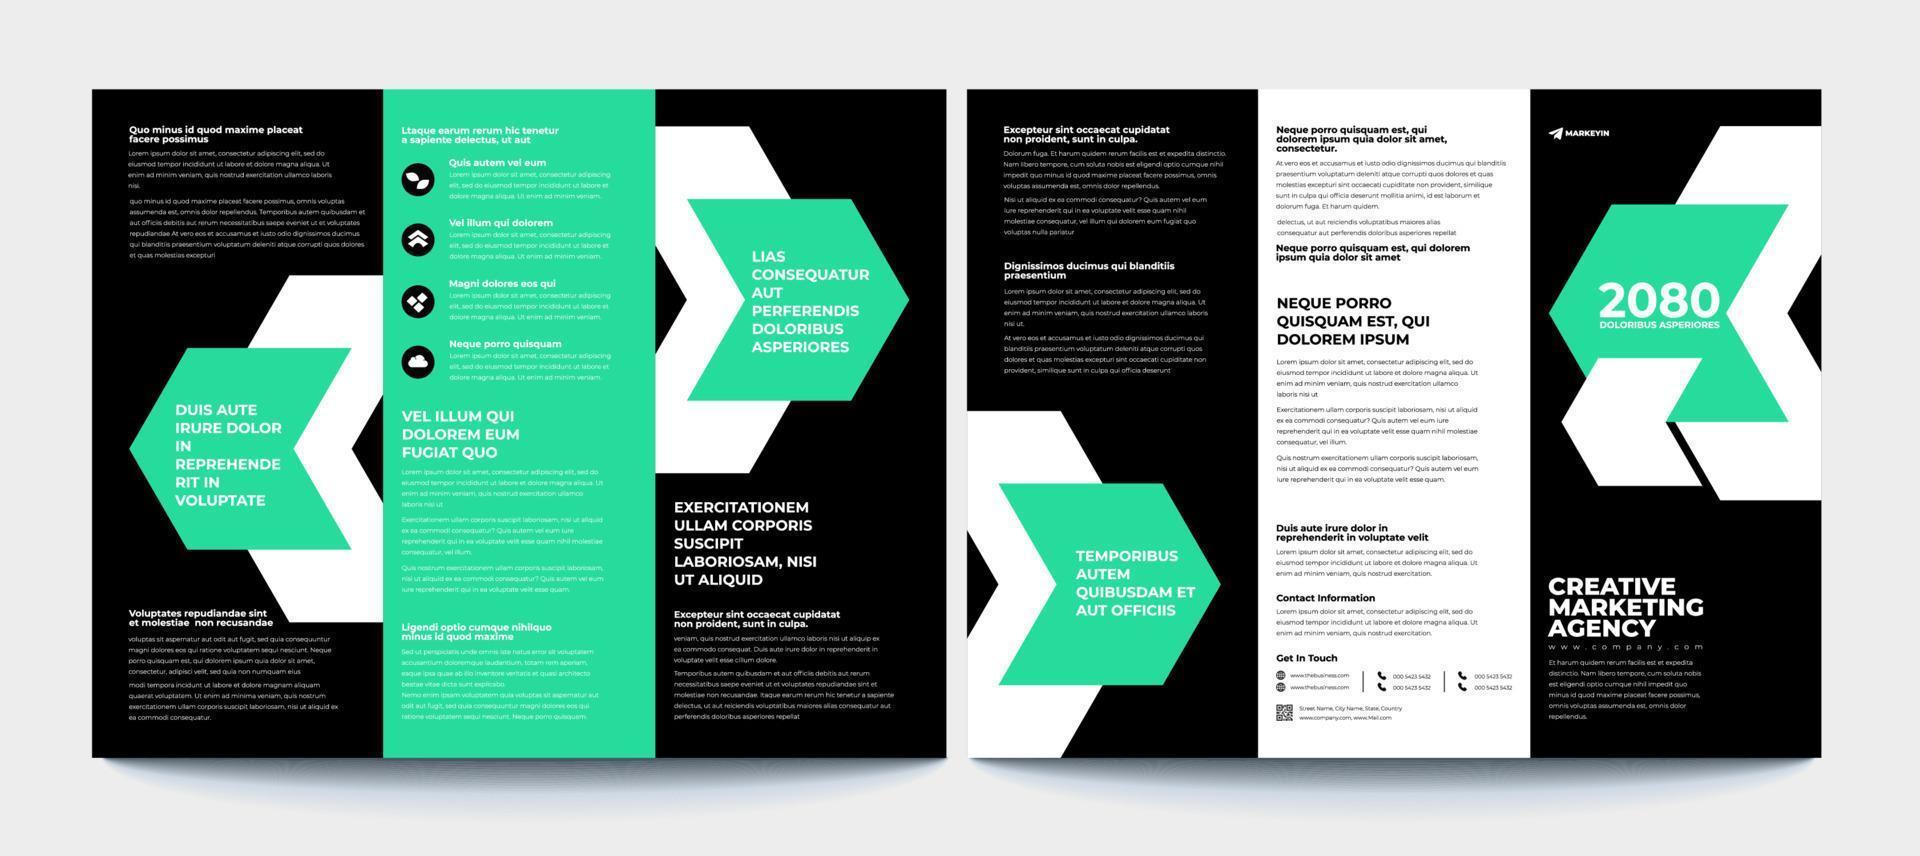 modello di brochure a tre ante aziendale moderno aziendale creativo vettore